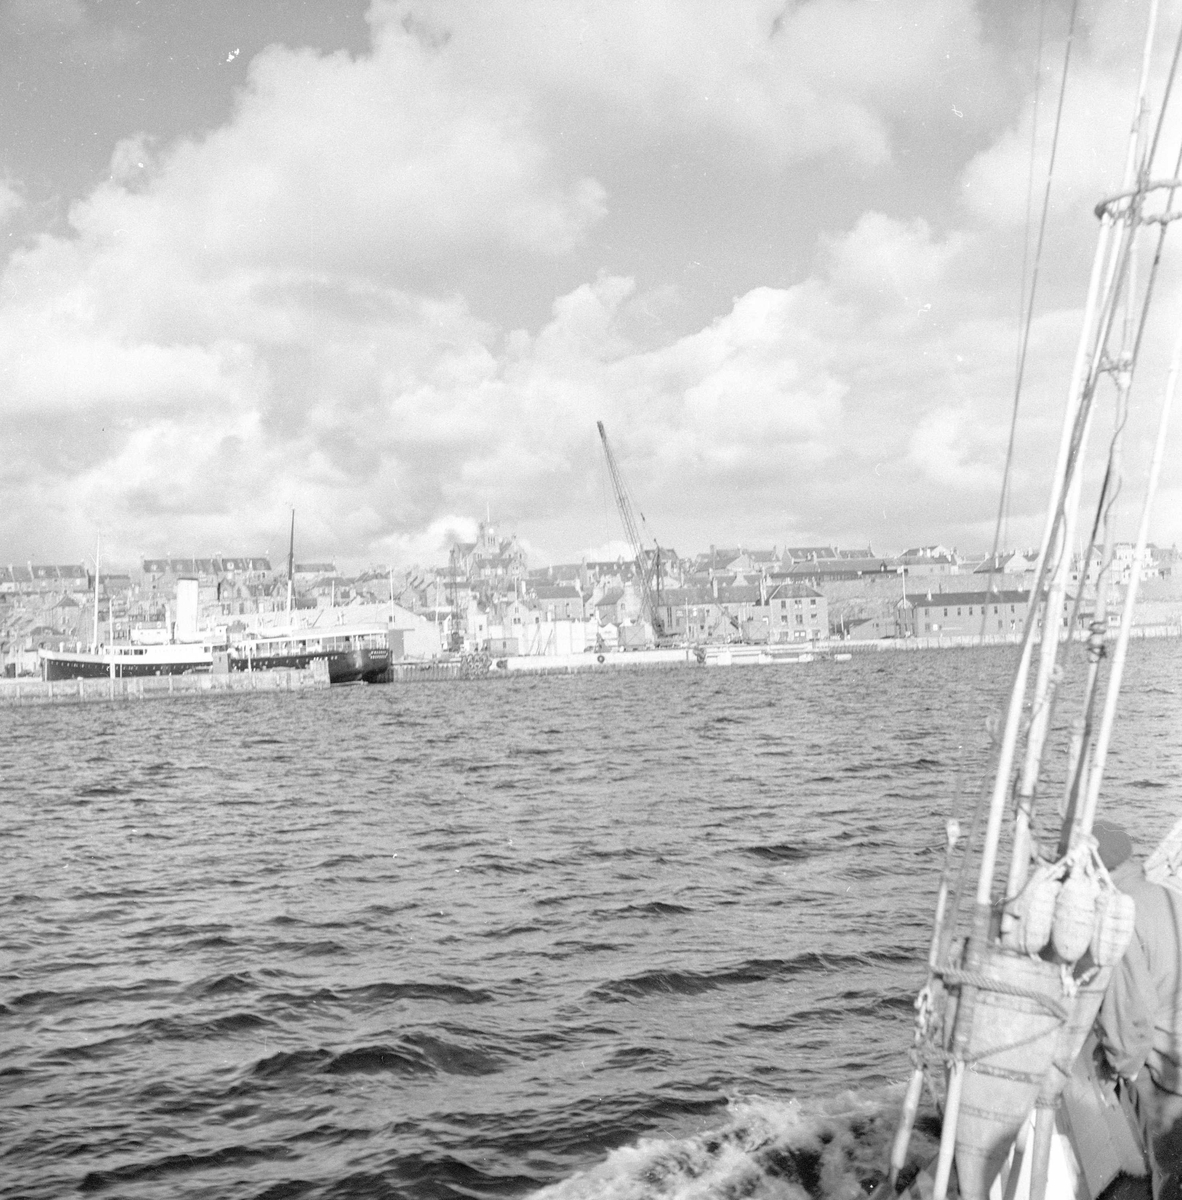 Pigghåfiske på Shetland.
Shetland, 14-22. mai 1958, oversikt over bebyggelsen og kaianlegget.